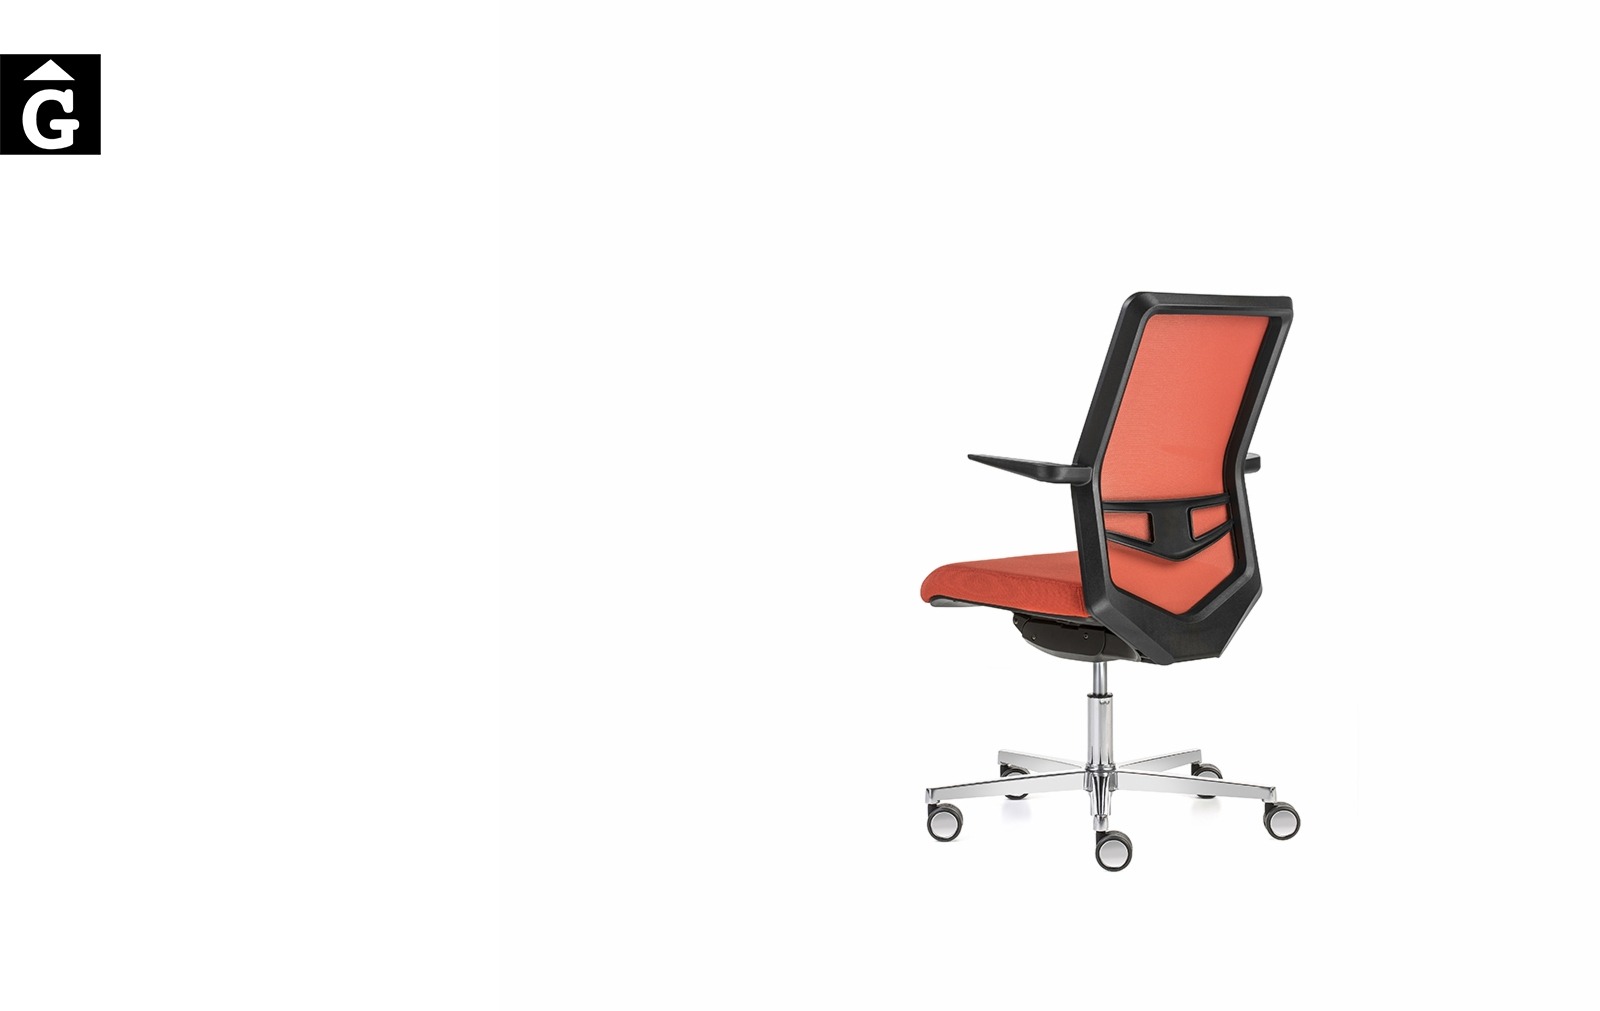 Cadira despatx Equis Jorge pensi estudio | Vista darrera | Dile | mobiliari d’oficina molt interessant | mobles Gifreu | botiga | Contract | Mobles nous oficina